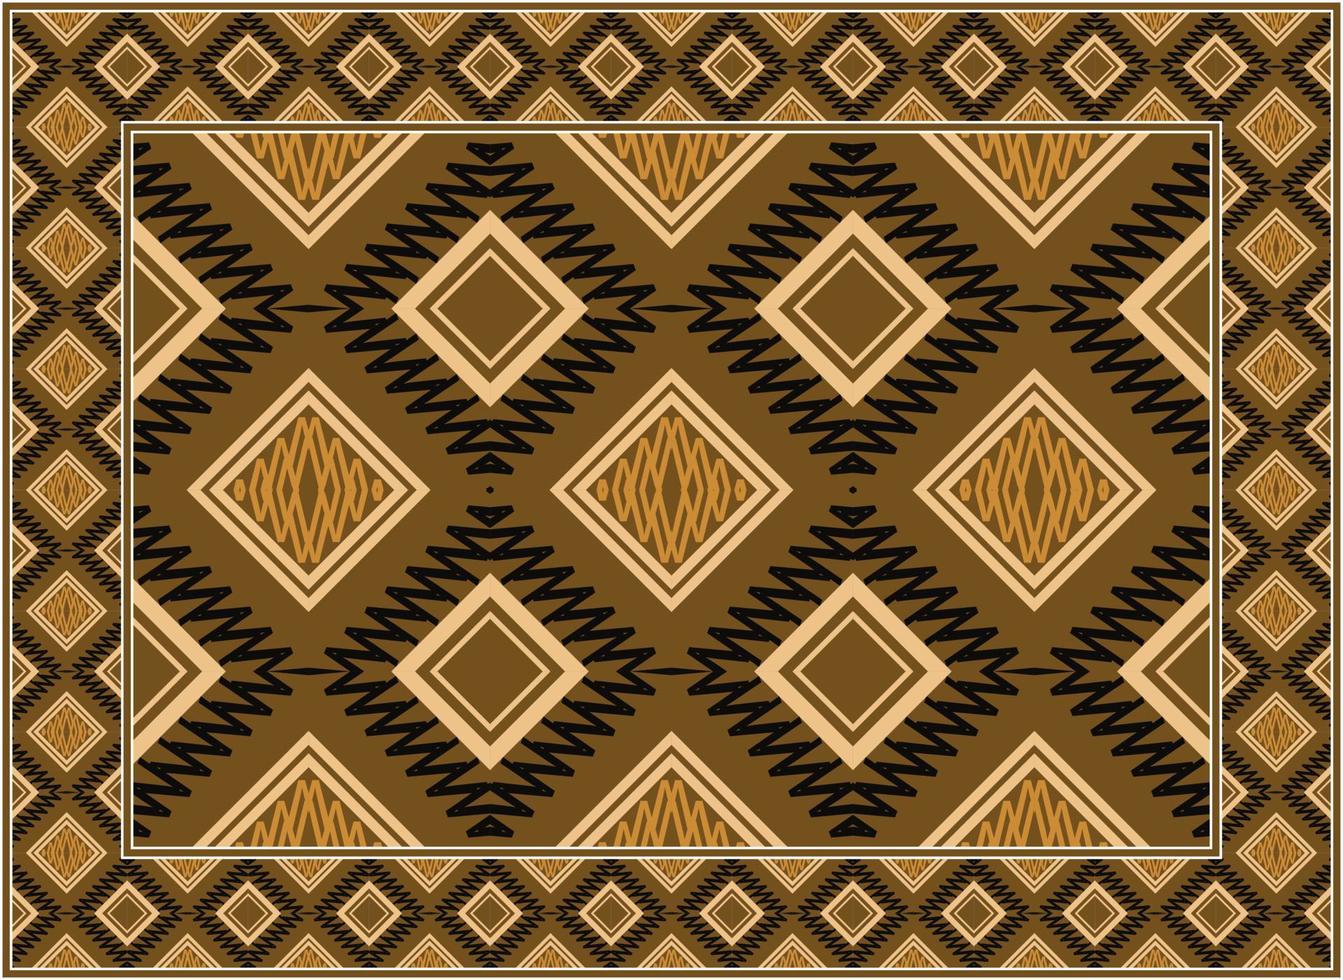 moderno persa alfombra, africano motivo moderno persa alfombra, africano étnico azteca estilo diseño para impresión tela alfombras, toallas, pañuelos, bufandas alfombra, vector